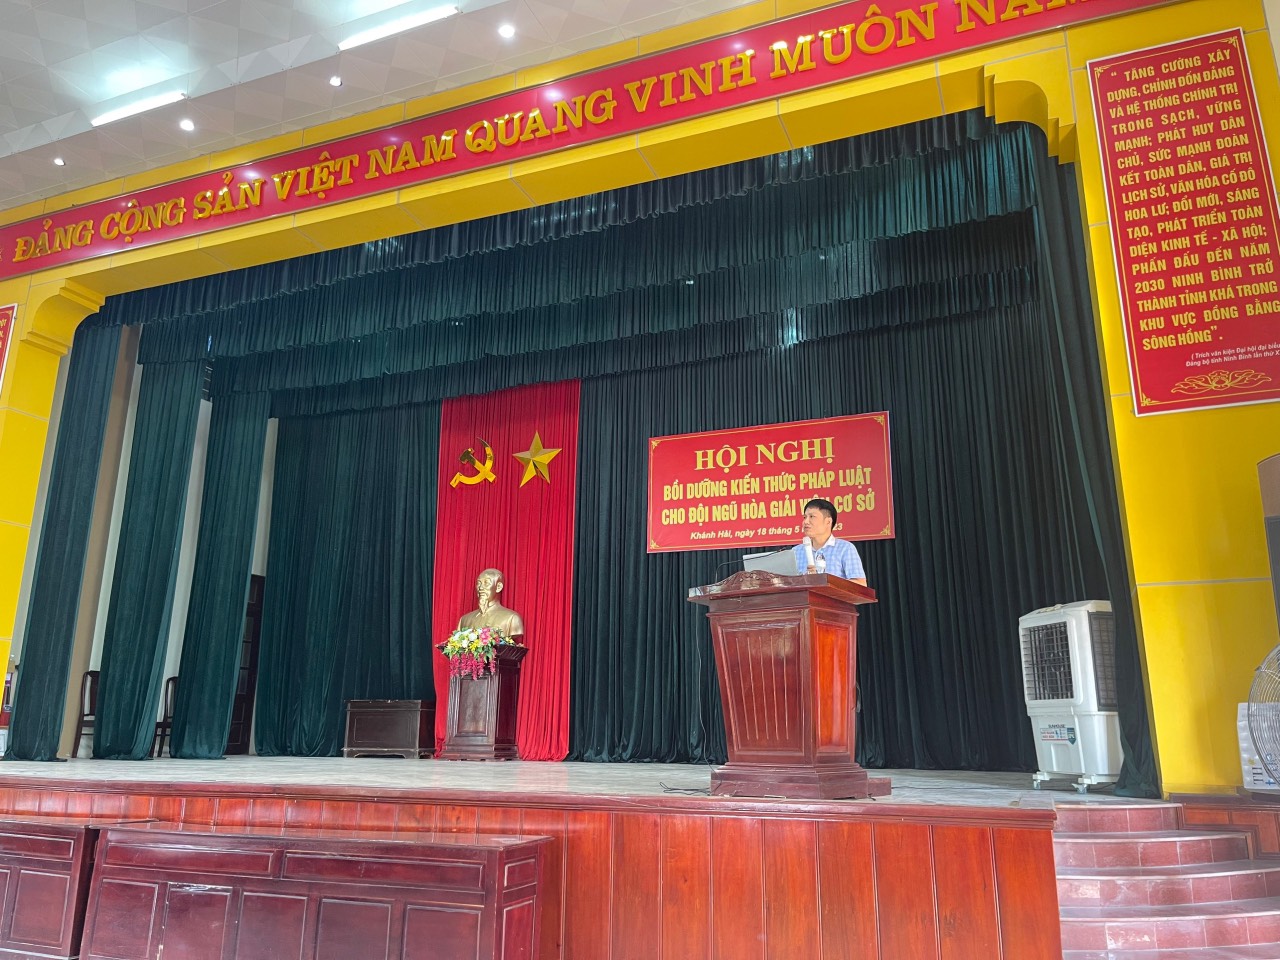 Hội nghị bồi dưỡng kiến thức pháp luật cho đội ngũ hòa giải viên cơ sở tại các xã trên địa bàn huyện Yên Khánh